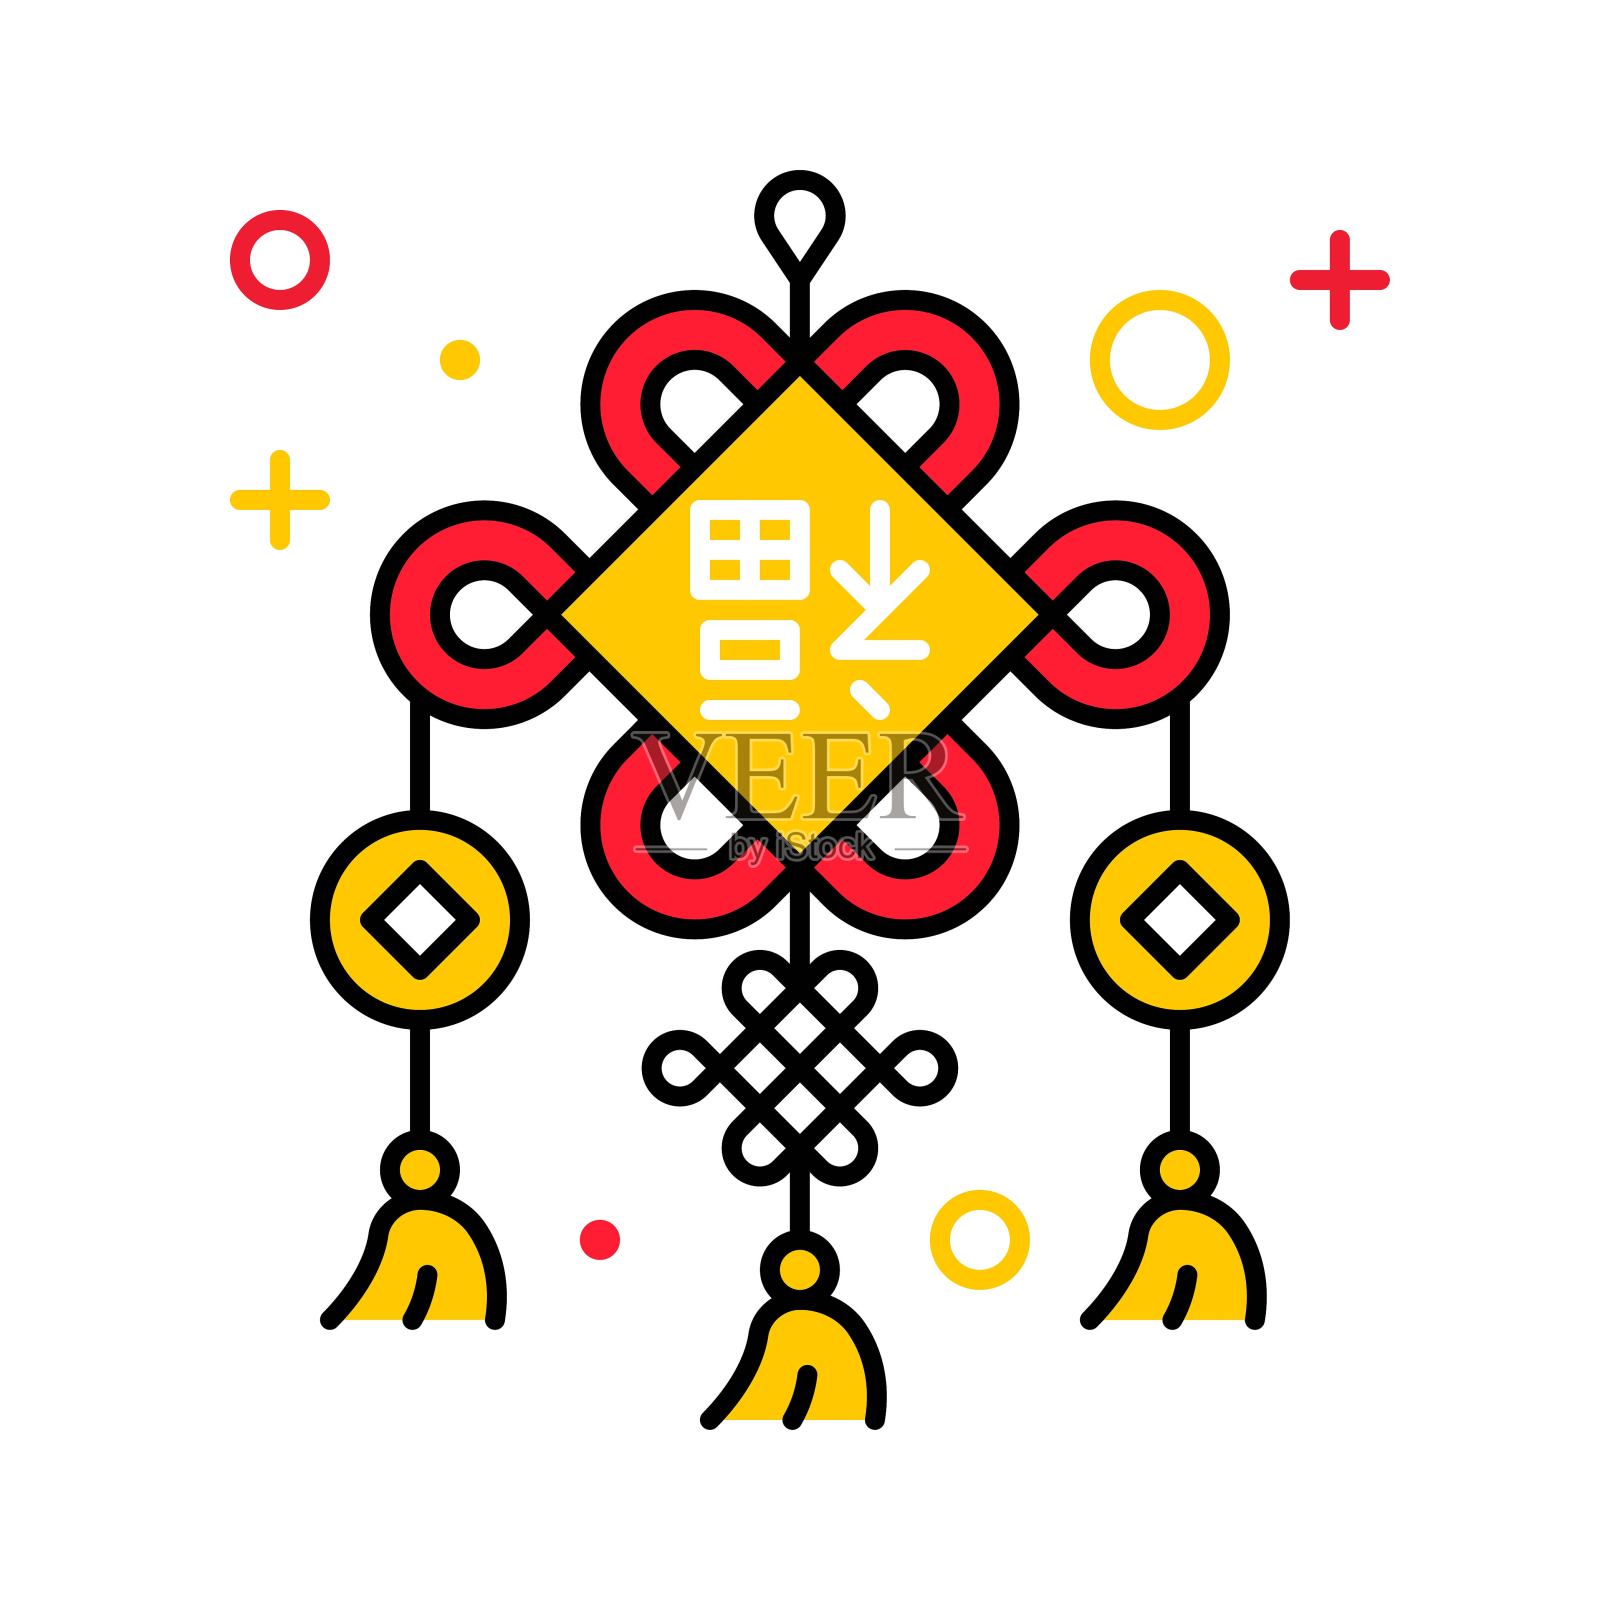 中国结用汉语字母表示幸运插画图片素材